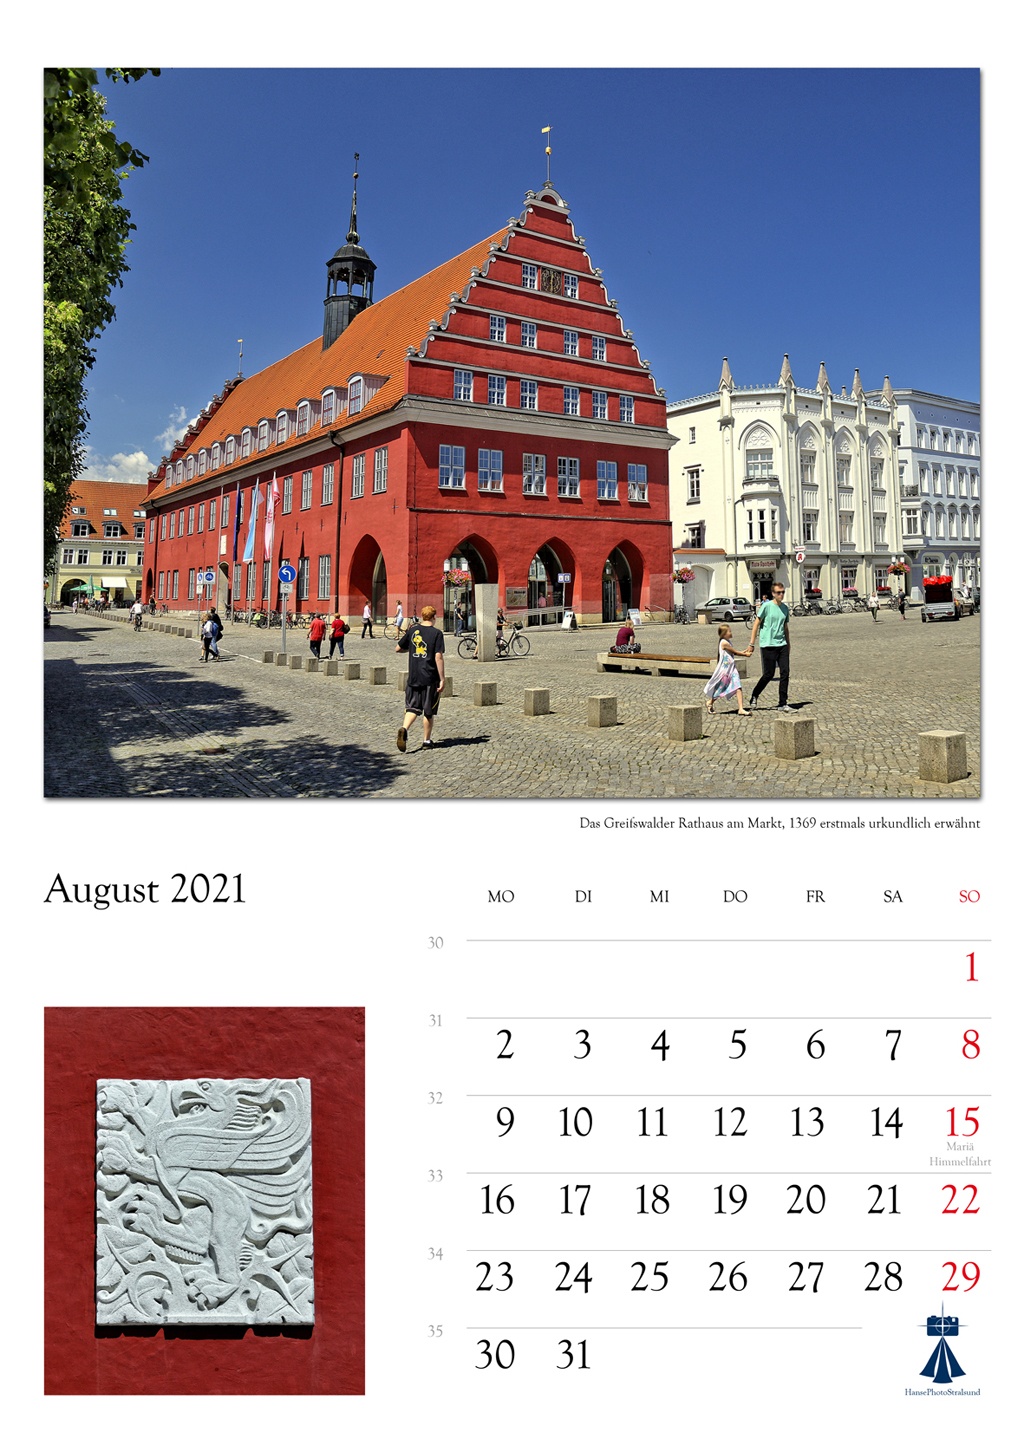 Das Greifswalder

Rathaus am Markt, 1369 erstmals urkundlich erwähnt